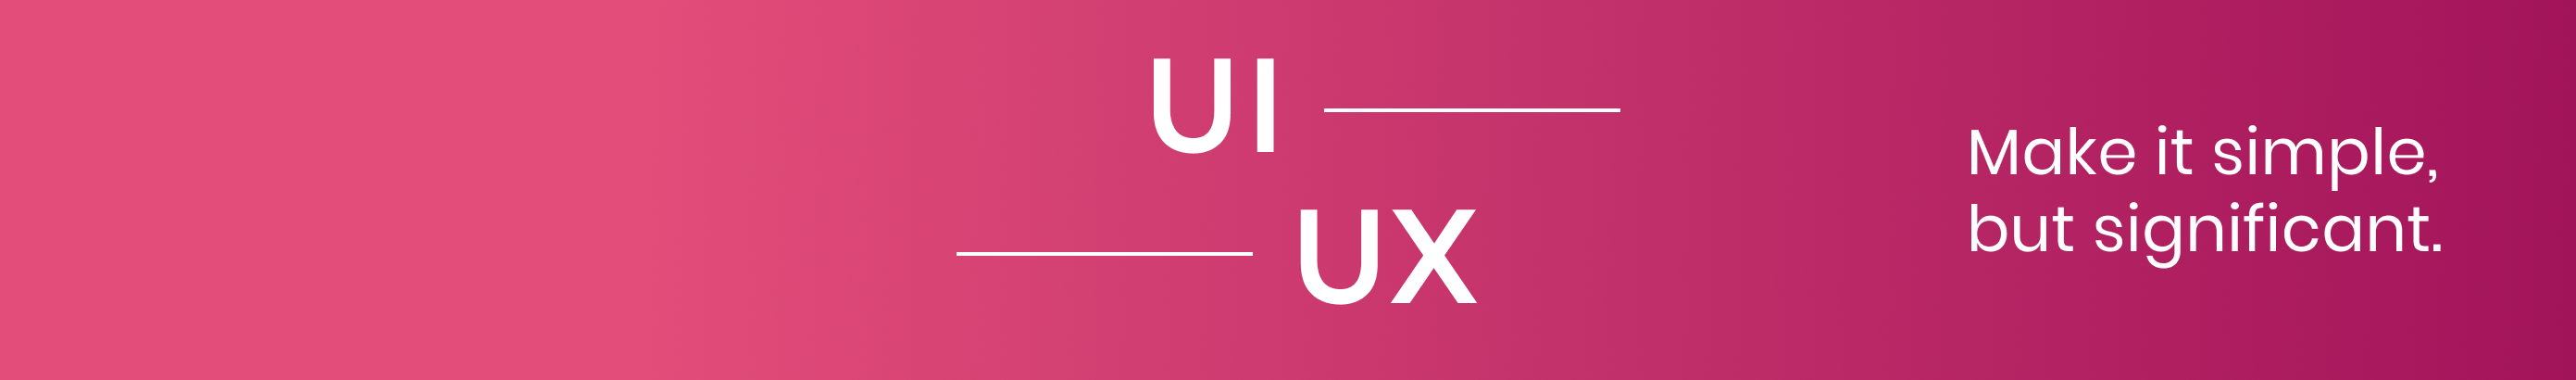 UI UX Designers profilbanner